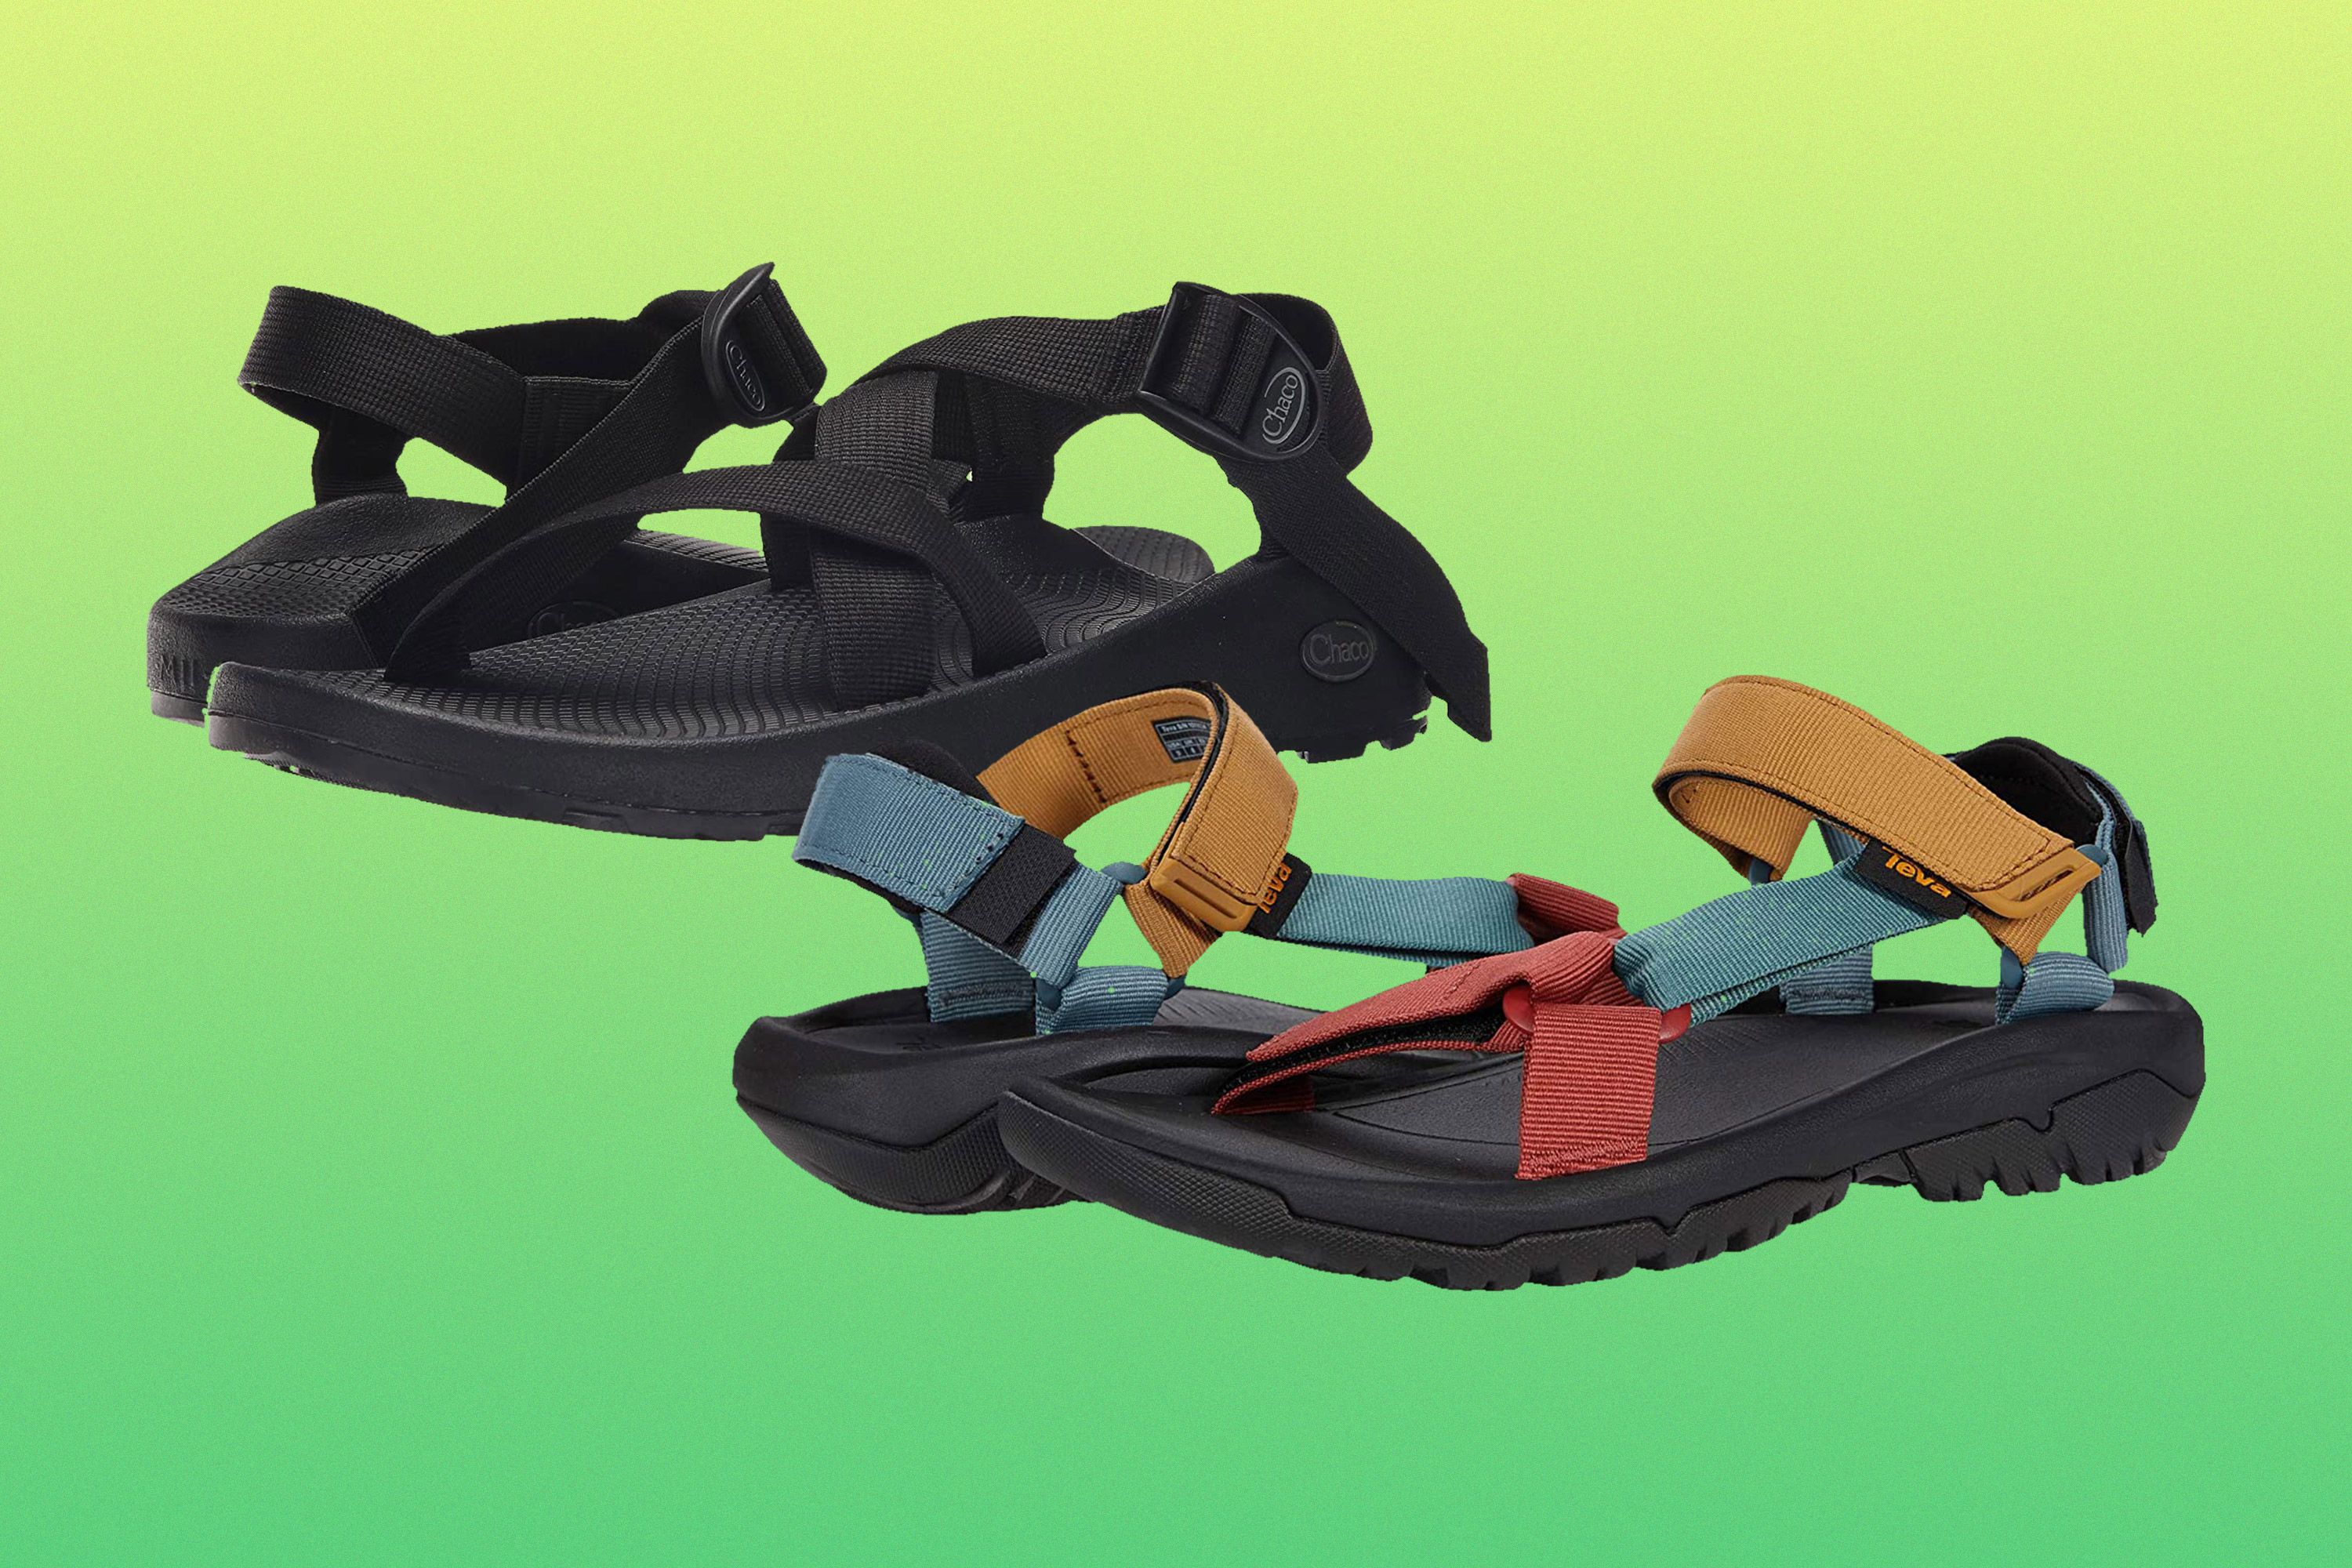 Rijd weg enkel en alleen adelaar Chaco Vs. Teva: Which Sandals Should You Buy?